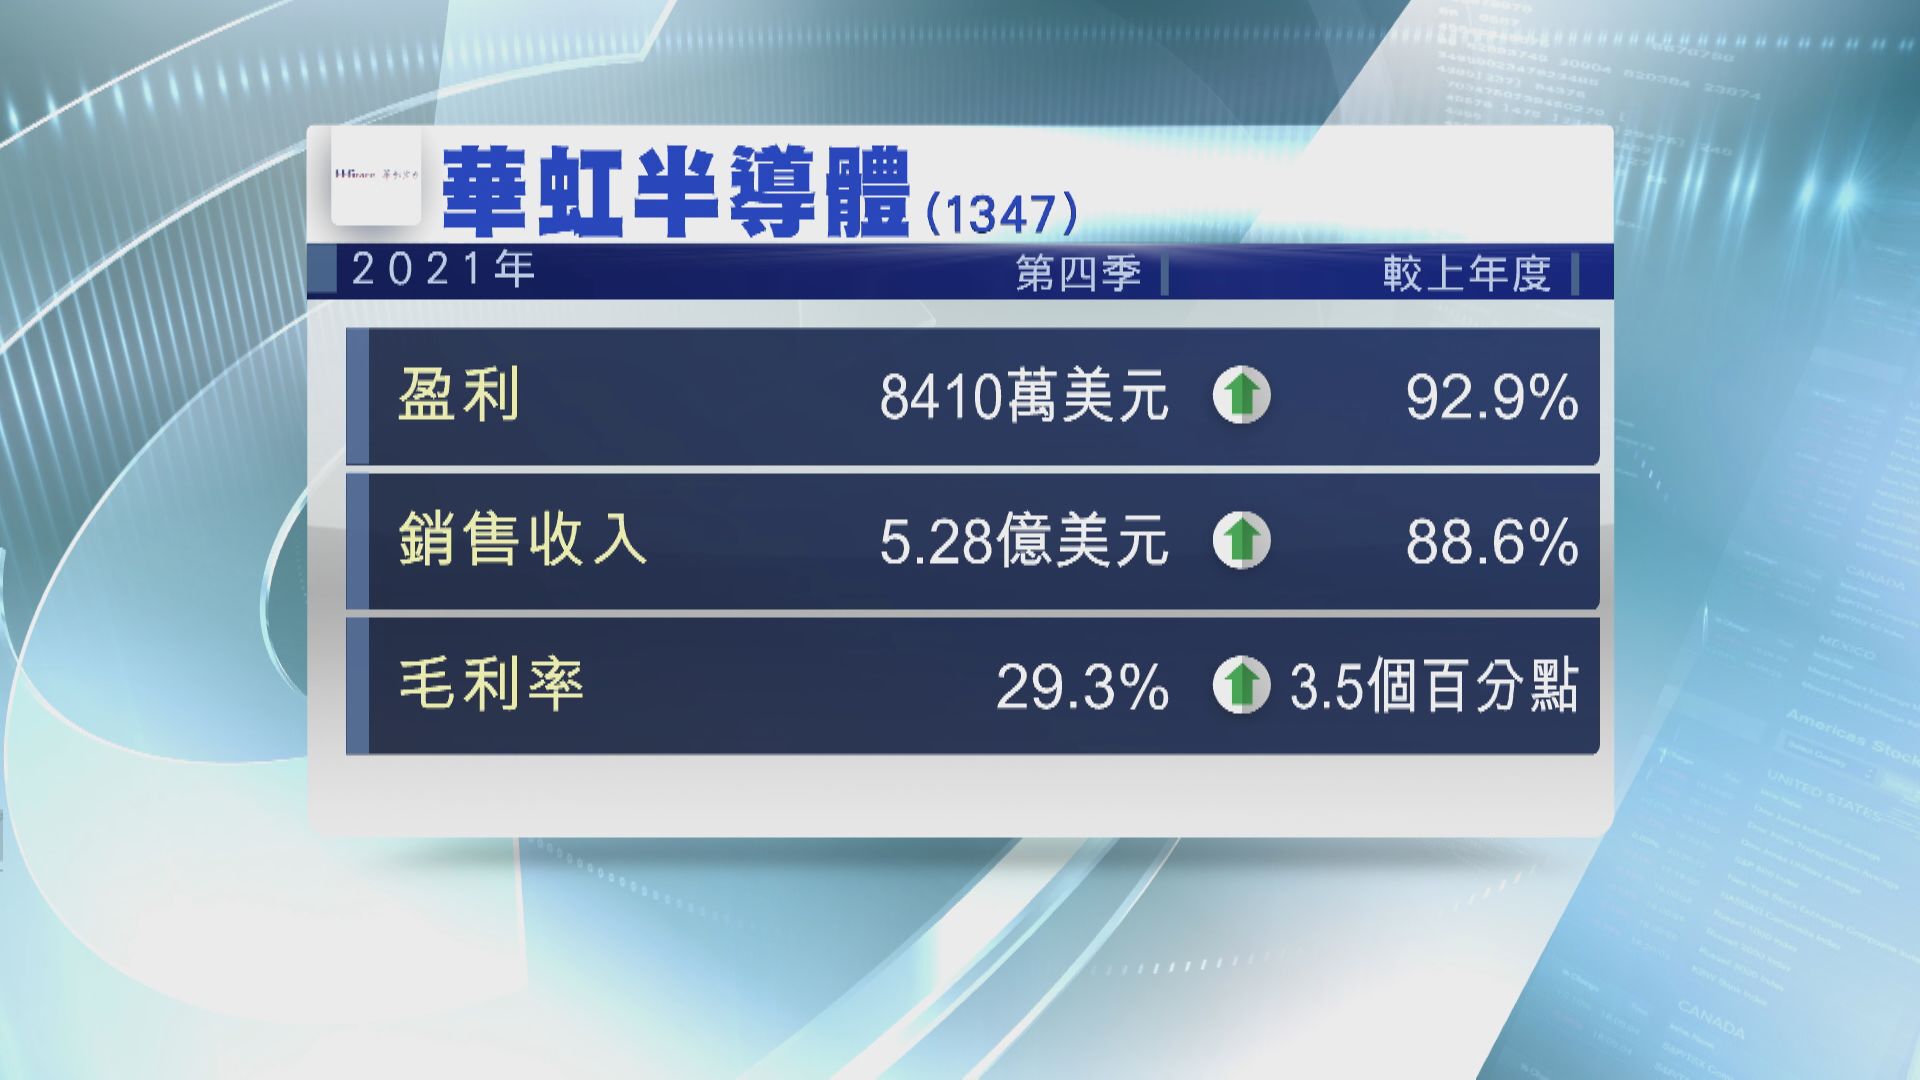 【業績快報】華虹半導體去年第四季度盈利升92%